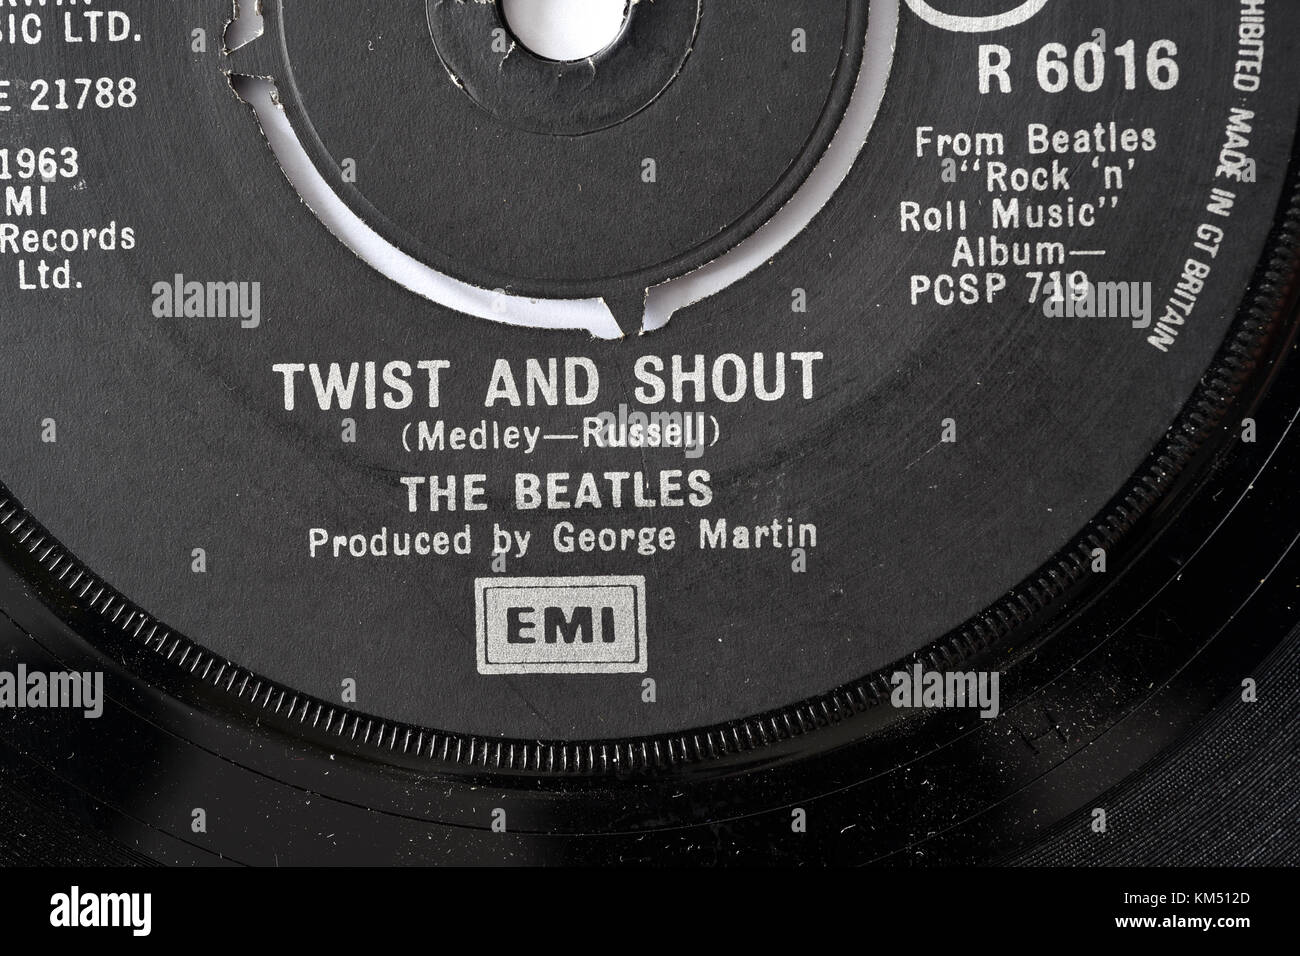 Beatles Twist and shout de siete pulgadas detalles de etiqueta única Foto de stock